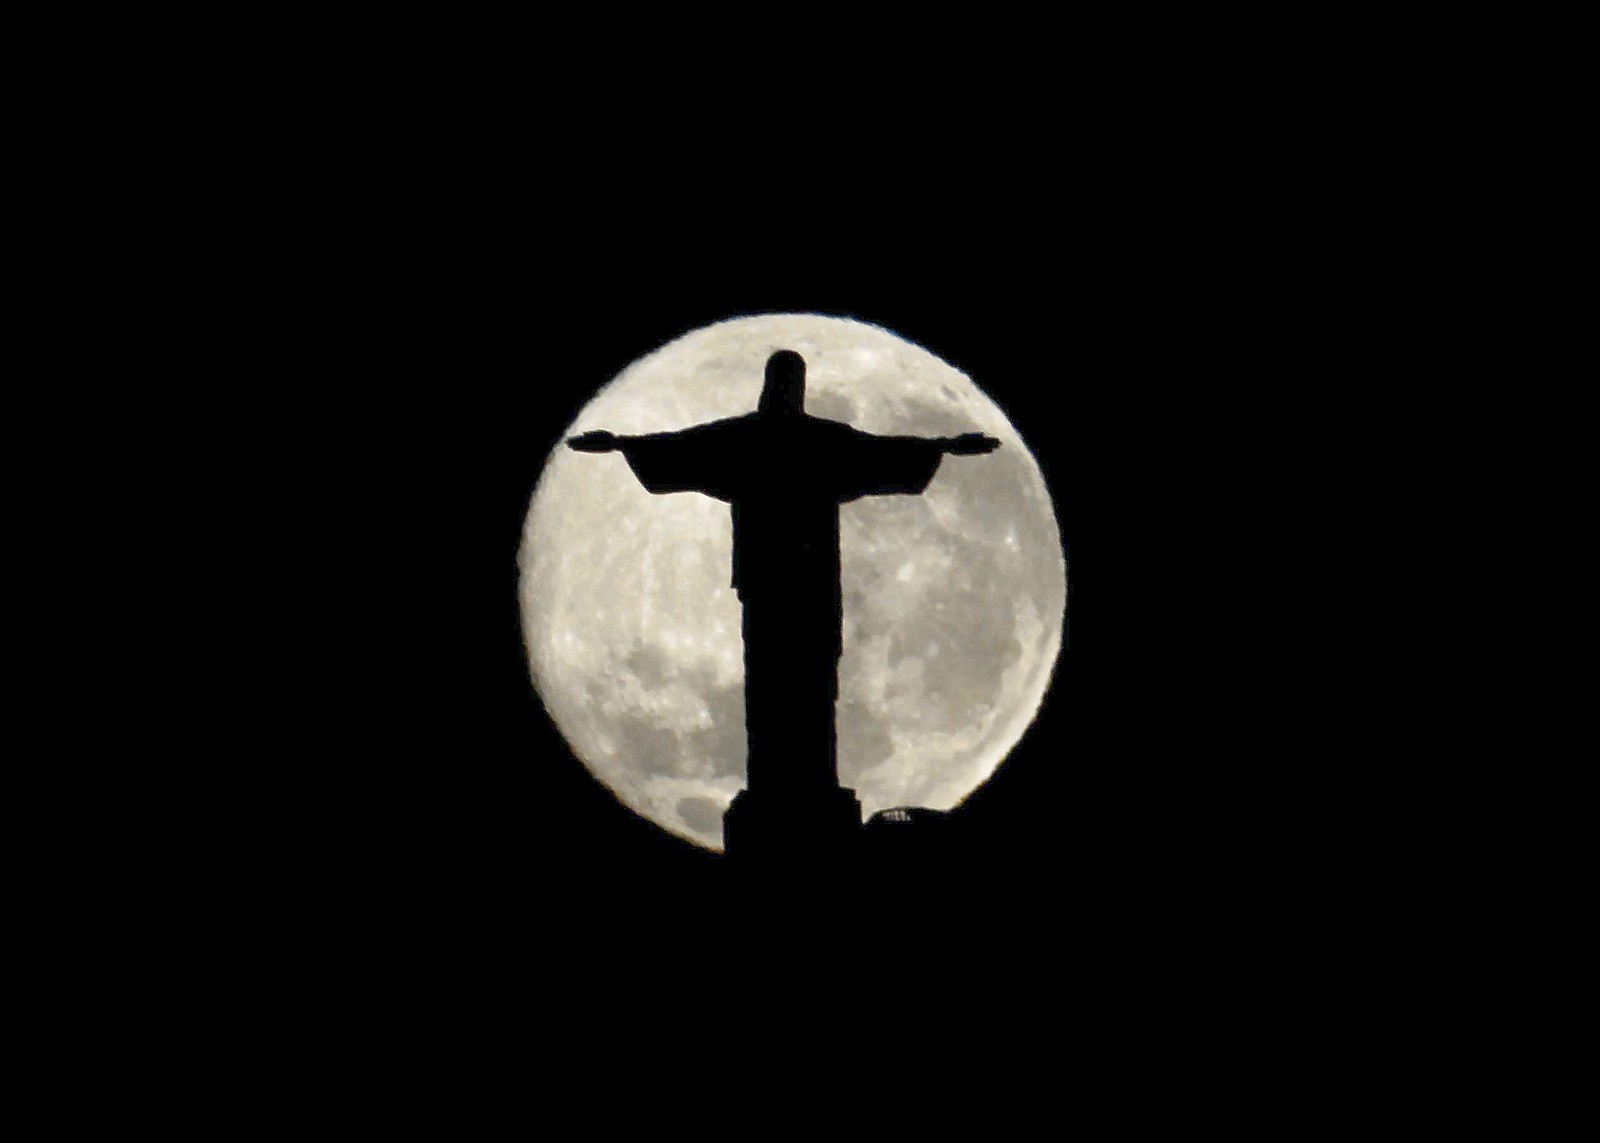 24/08/2010. Amanhecer no Rio. A lua cheia que subiu ontem começando a semana, desce nesta quarta feira atrás do cristo. Foto tirada da Urca as 05h30m. Foto Custodio Coimbra.